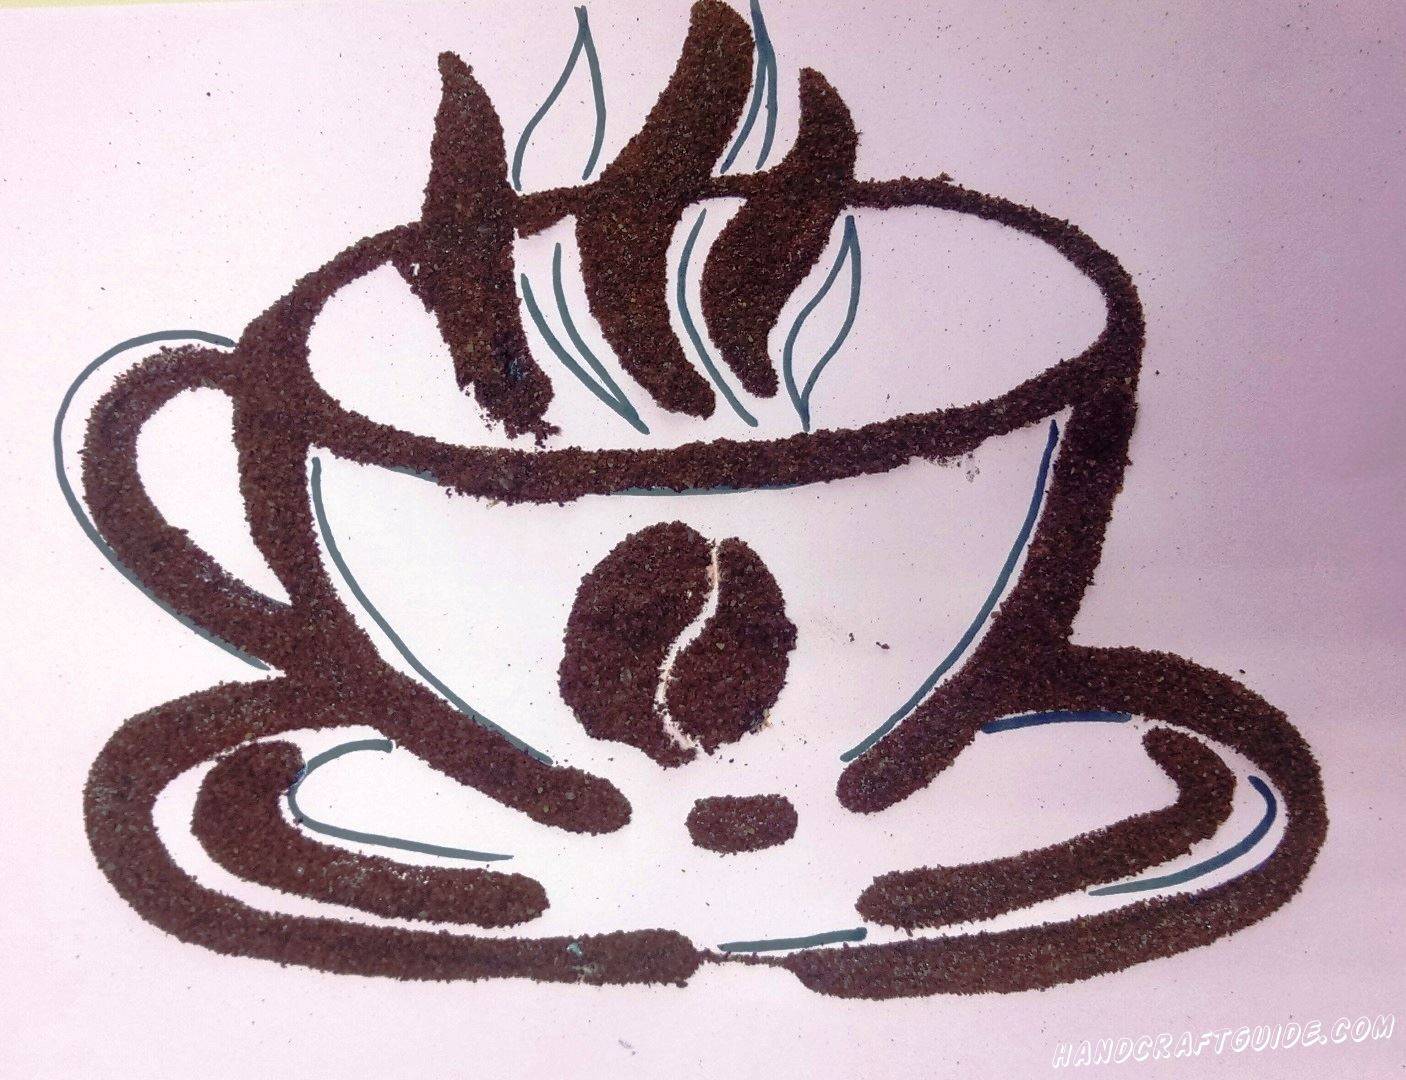 Латте-арт: как рисовать на кофе (рисунки на пенке)